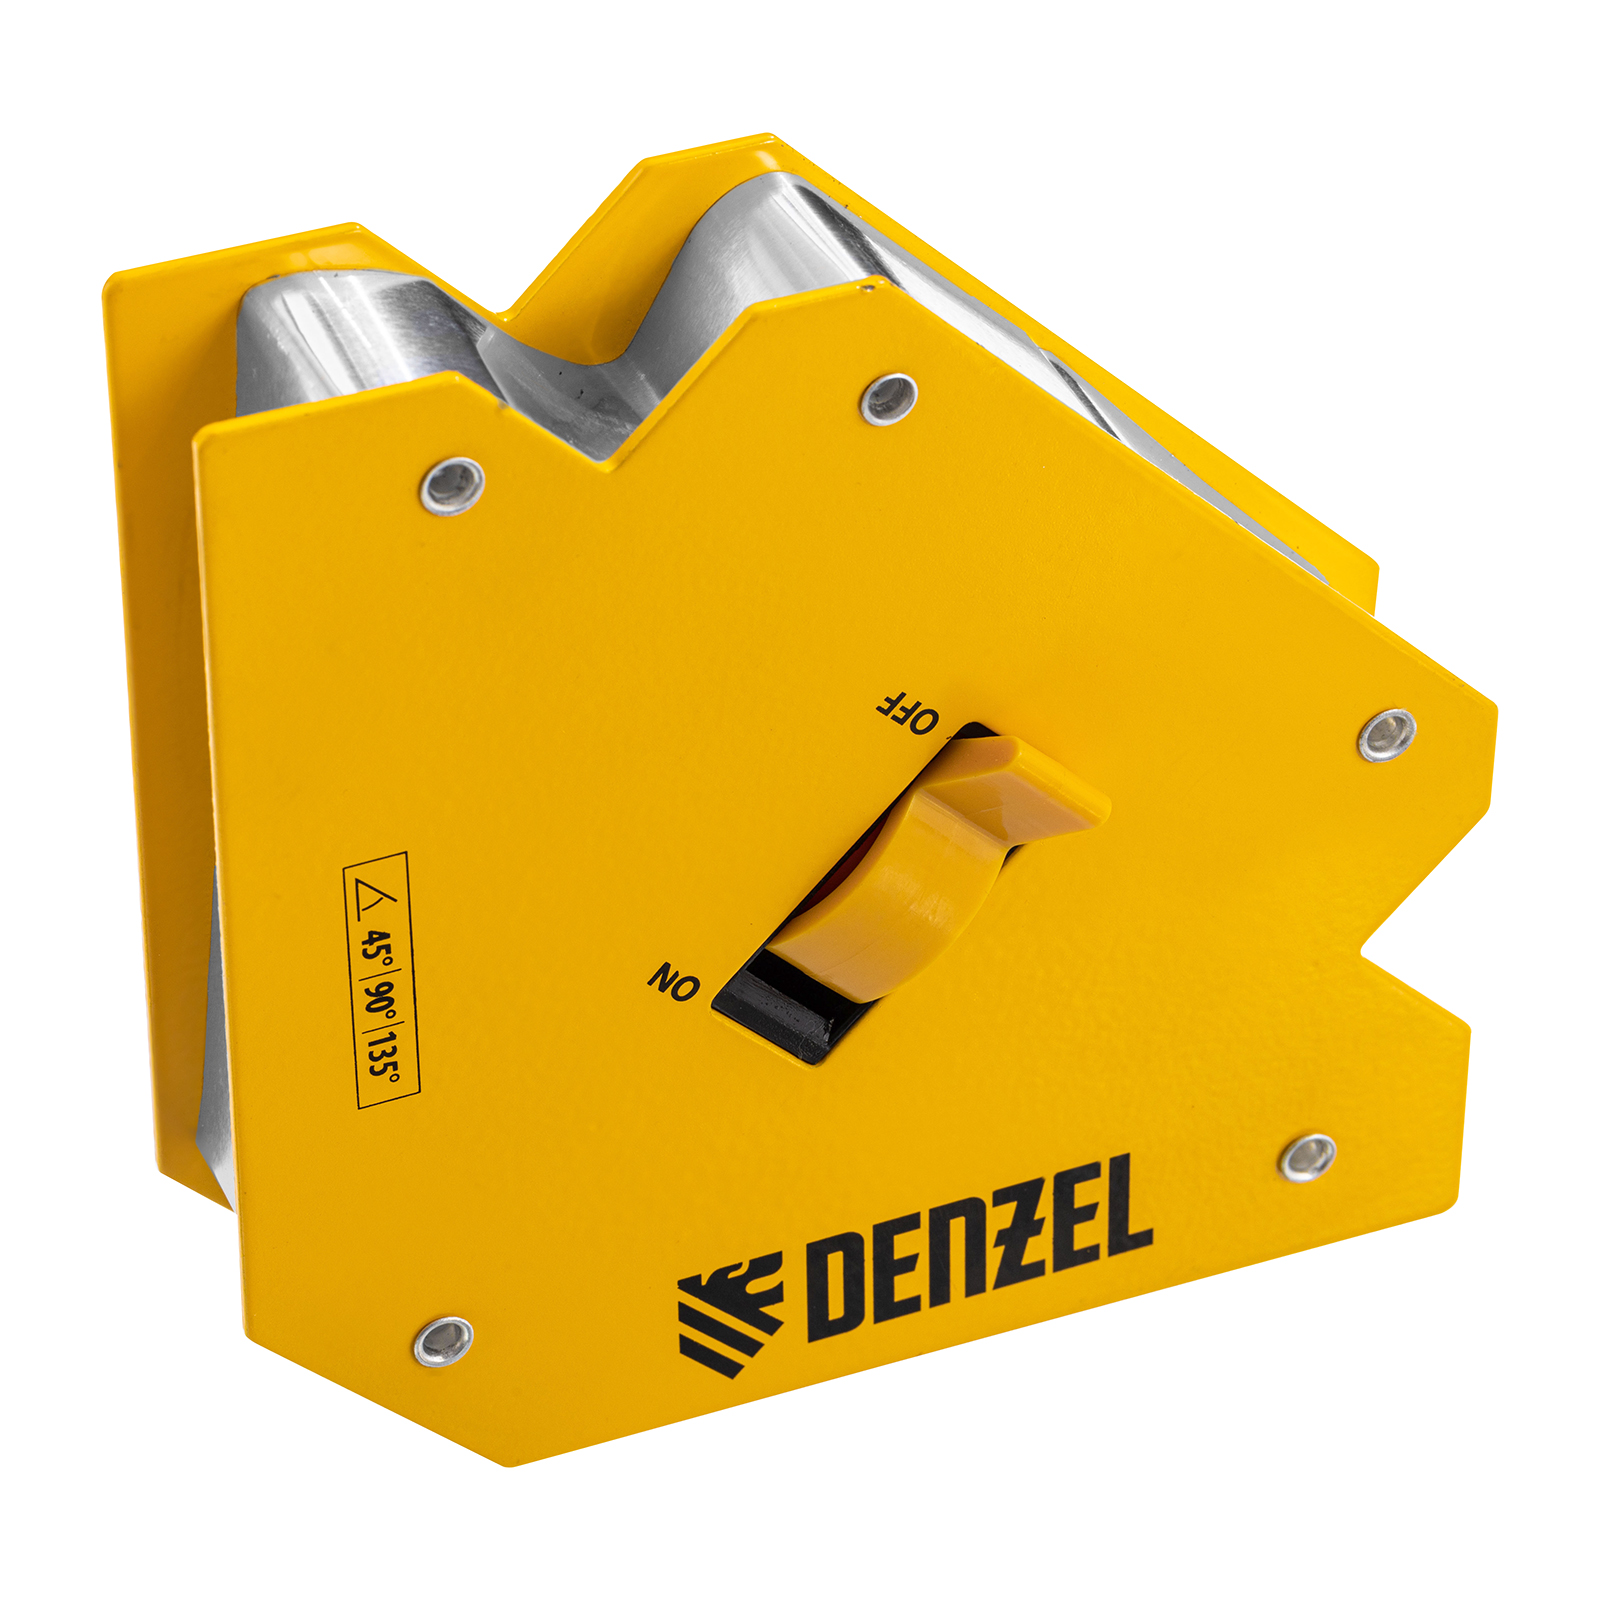 Фиксатор магнитный отключаемый для сварочных работ DENZEL усилие 55 LB, 45х90х135 гр 97564 фиксатор магнитный регулируемый для сварочных работ denzel усилие 50 lb 97565